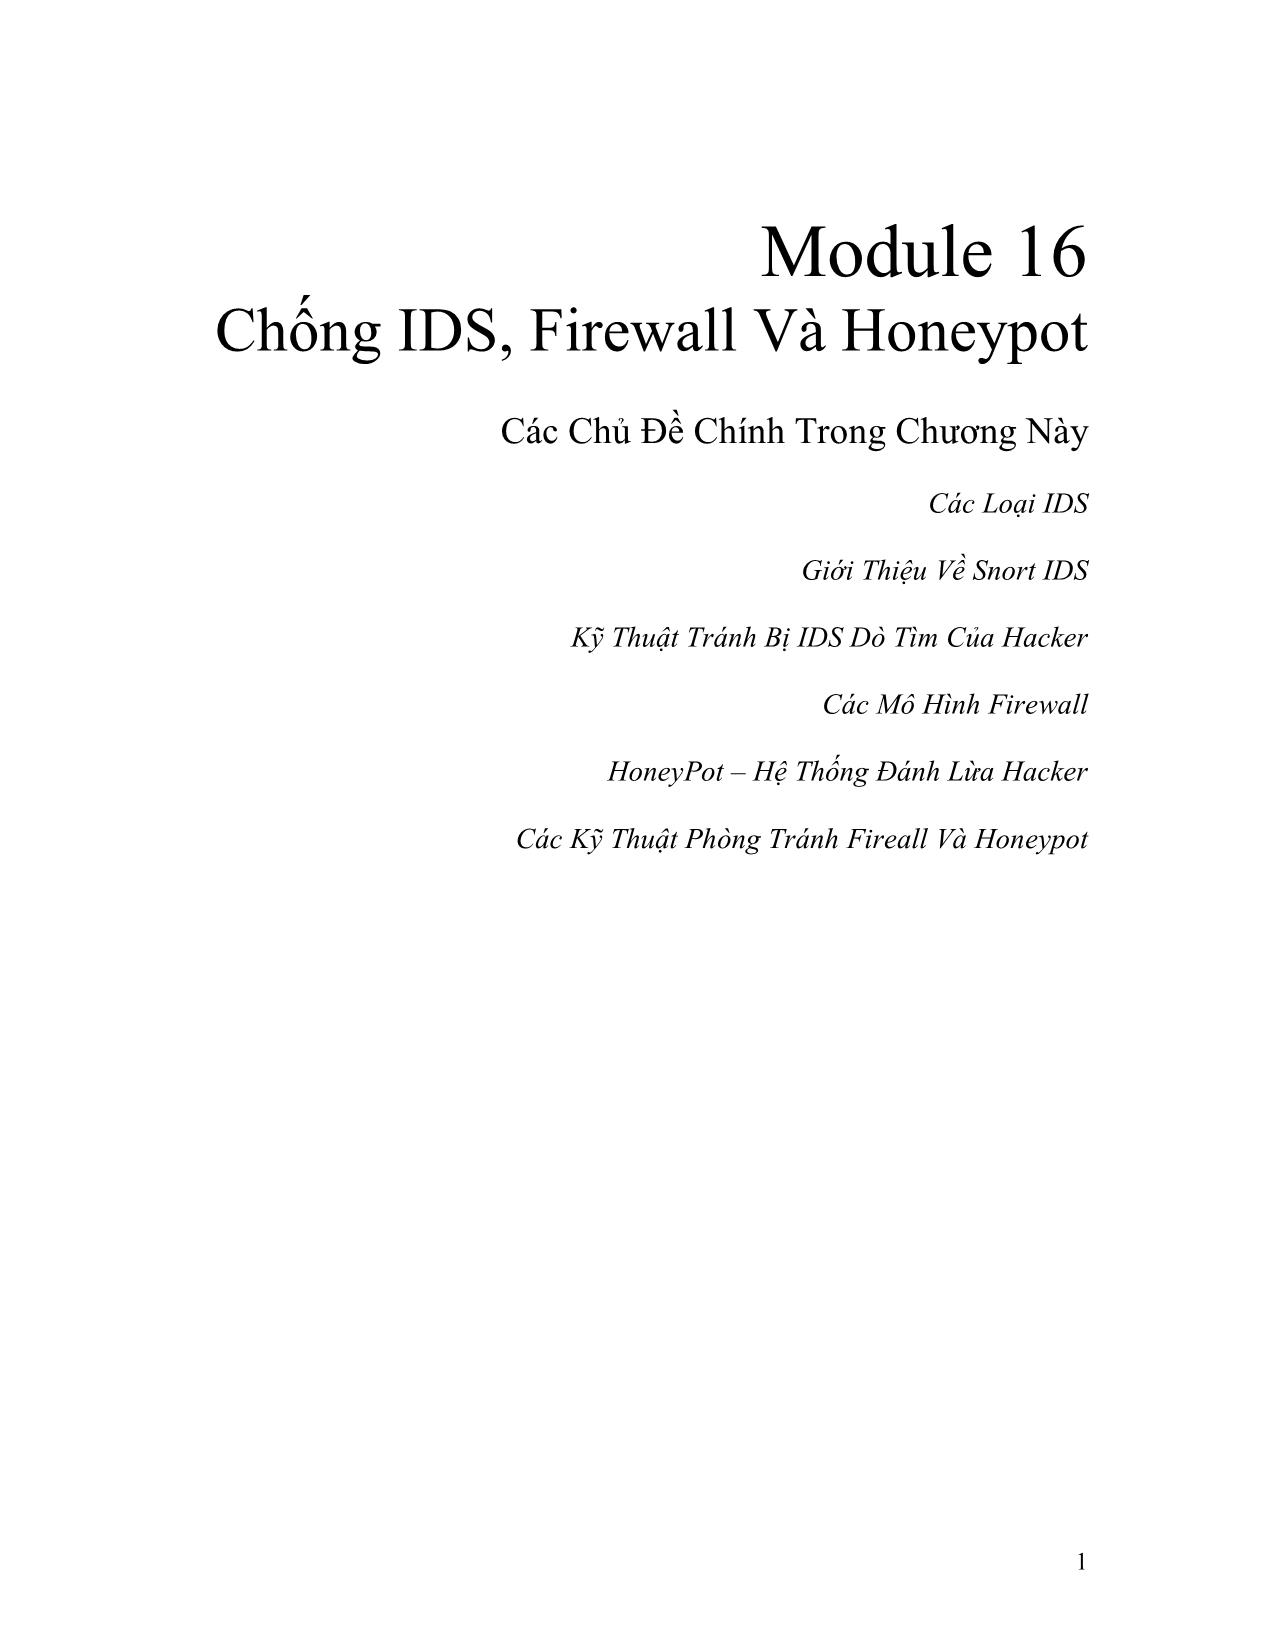 Module 16: Chống IDS, Firewall và Honeypot trang 1